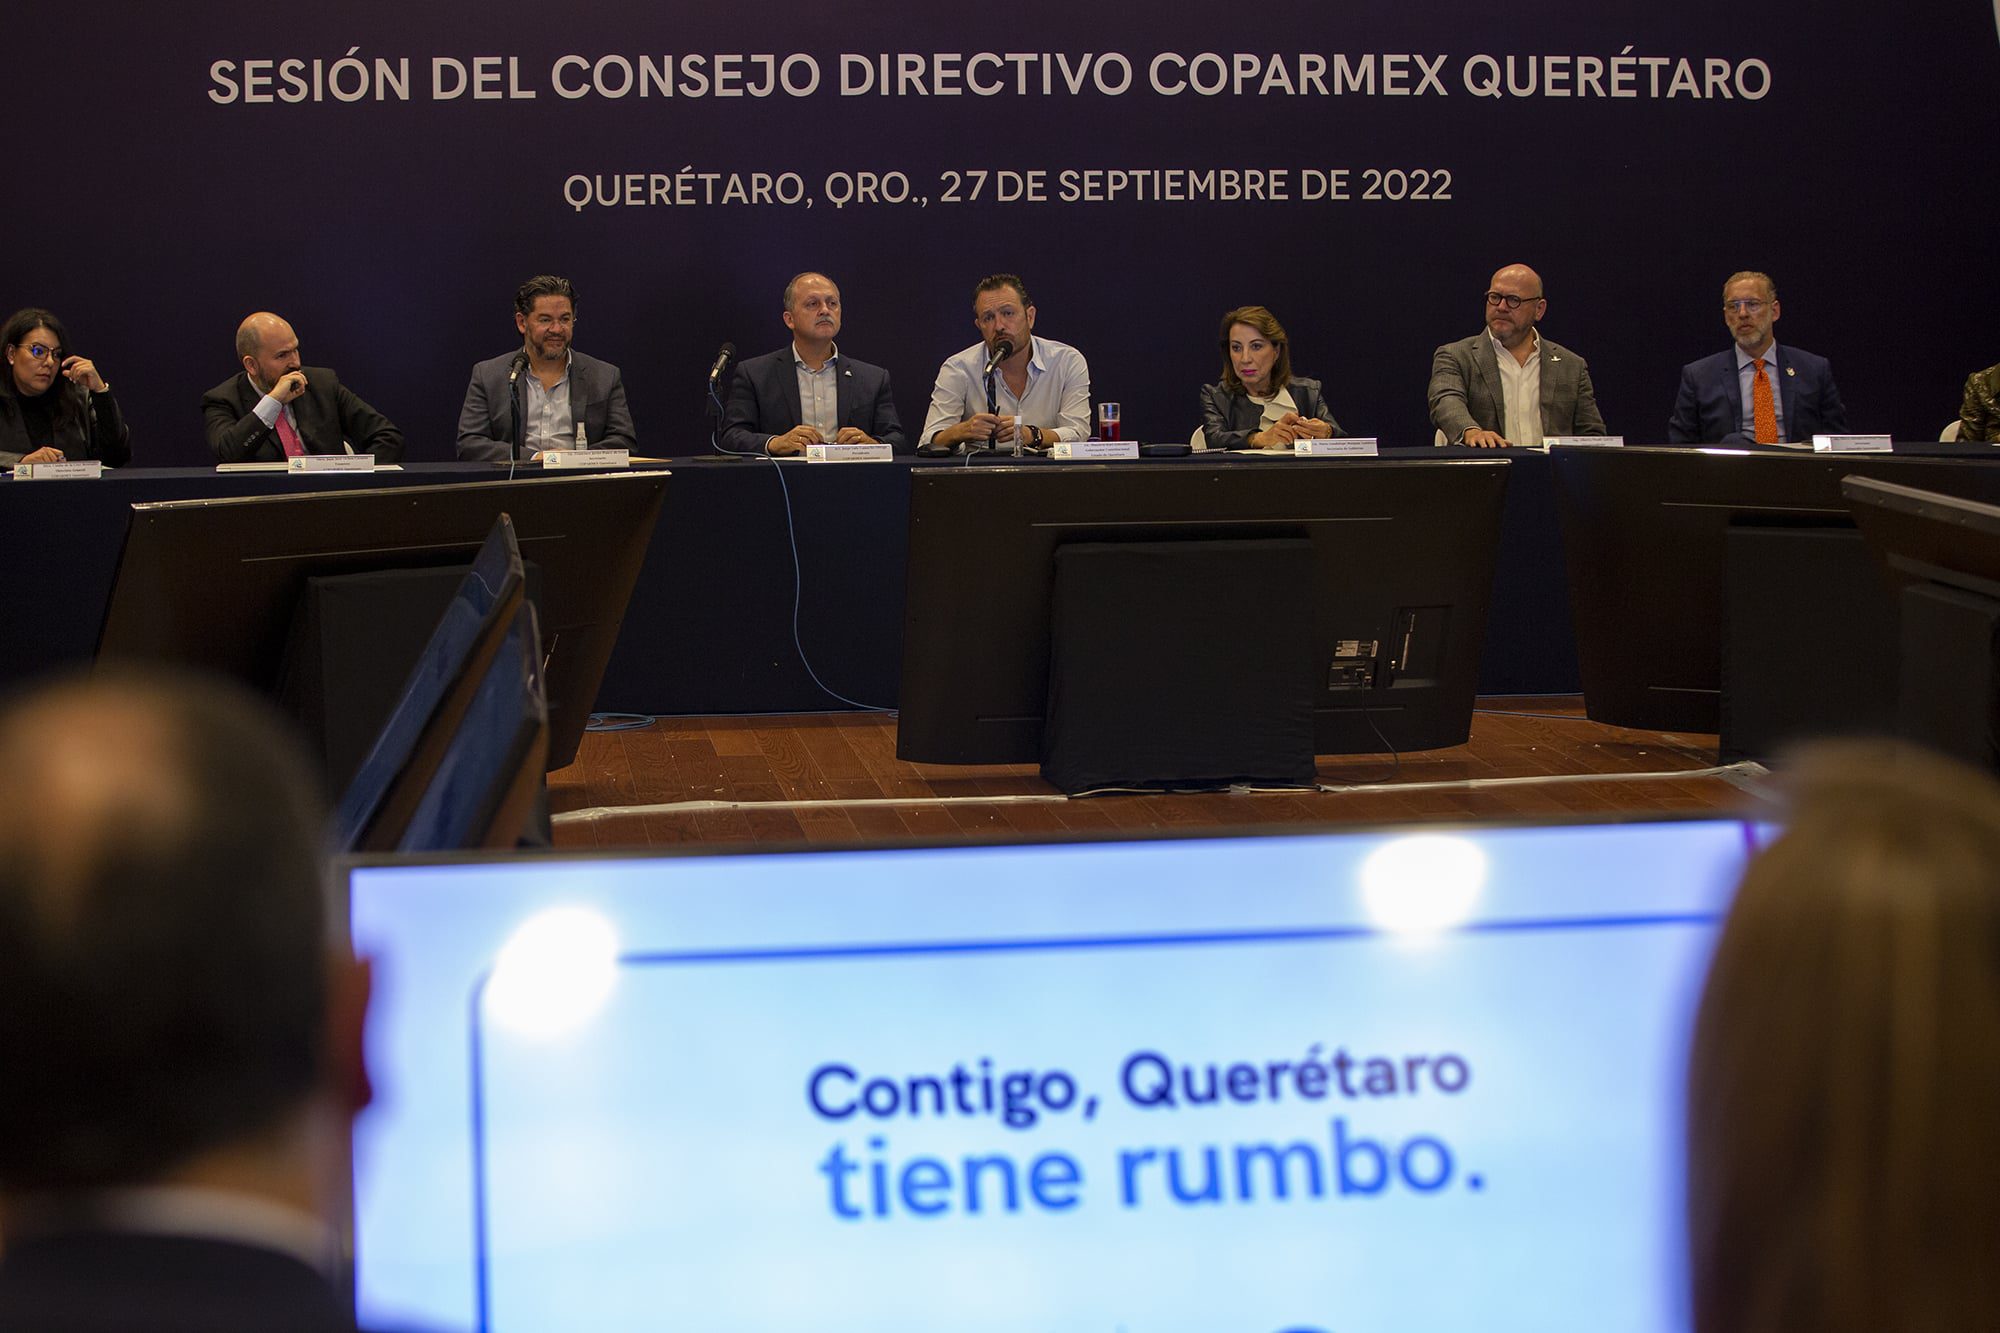 Kuri González expusó los logros y retos a los que se ha enfrentado Querétaro en su primer año al frente del gobierno estatal